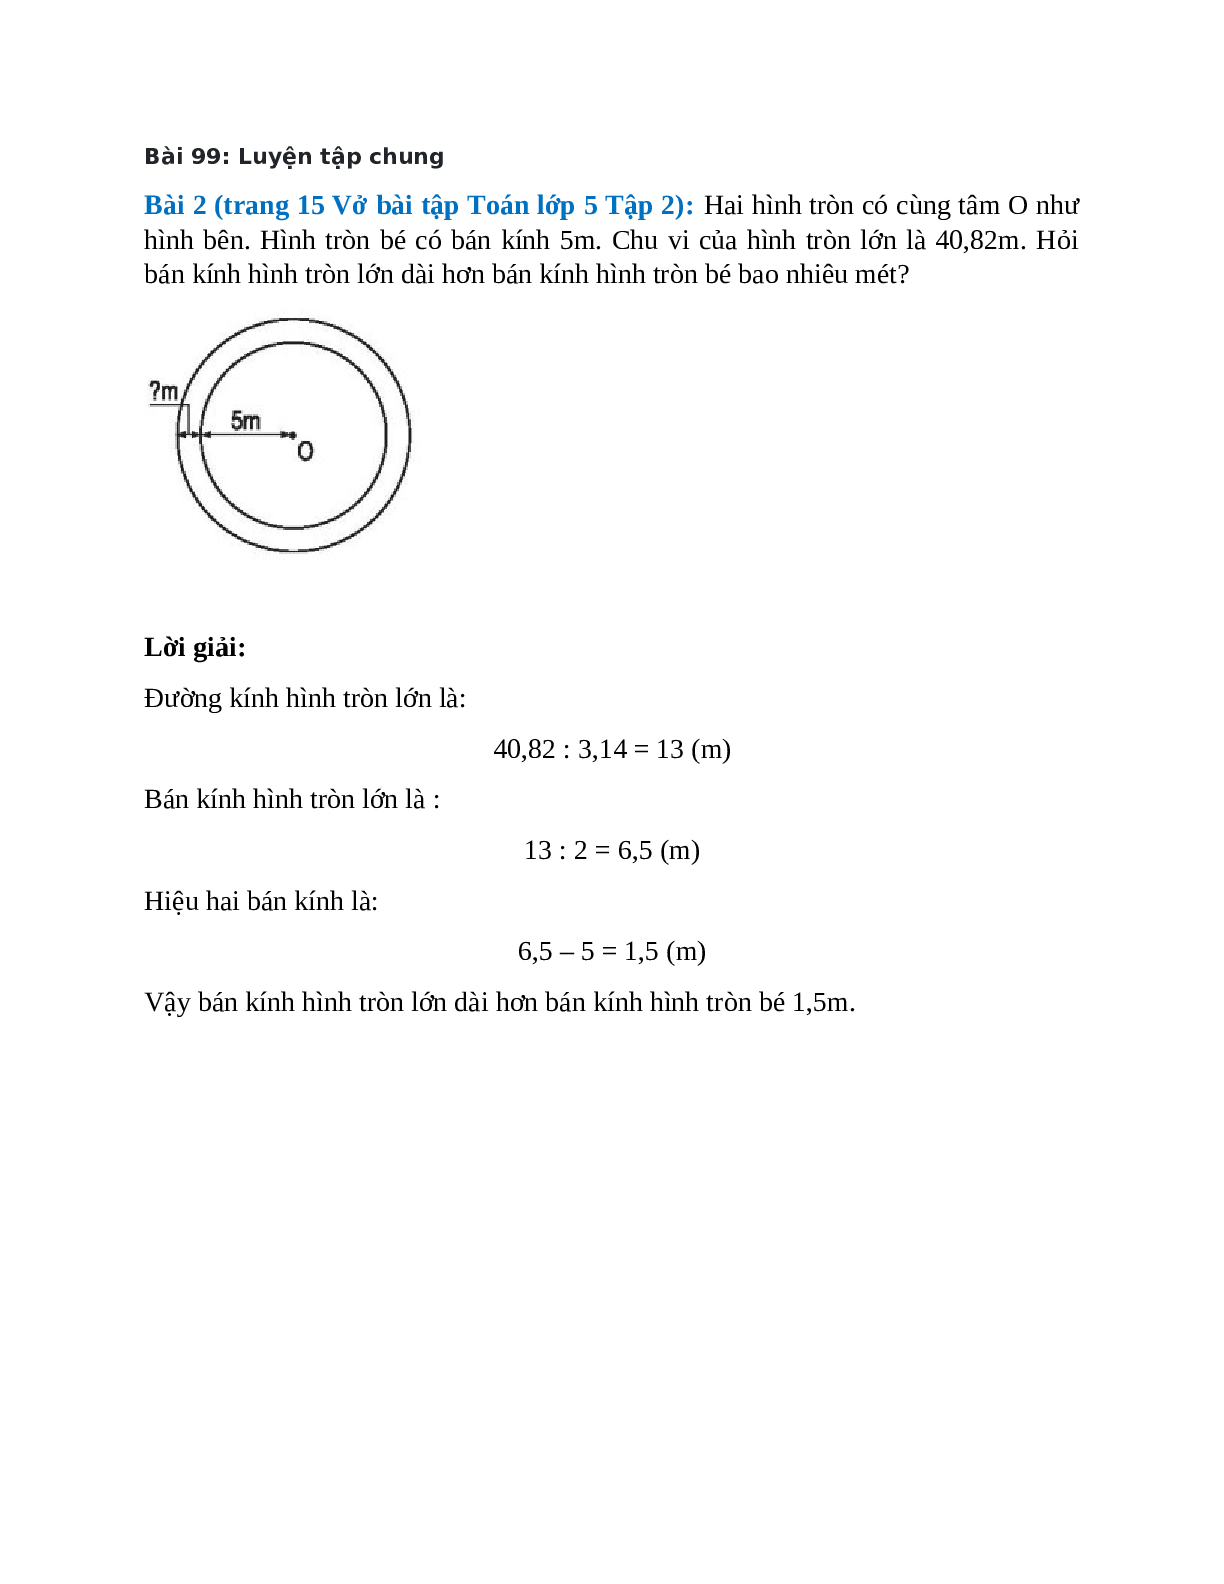 Hai hình tròn có cùng tâm O như hình bên. Hình tròn bé có bán kính 5m (trang 1)